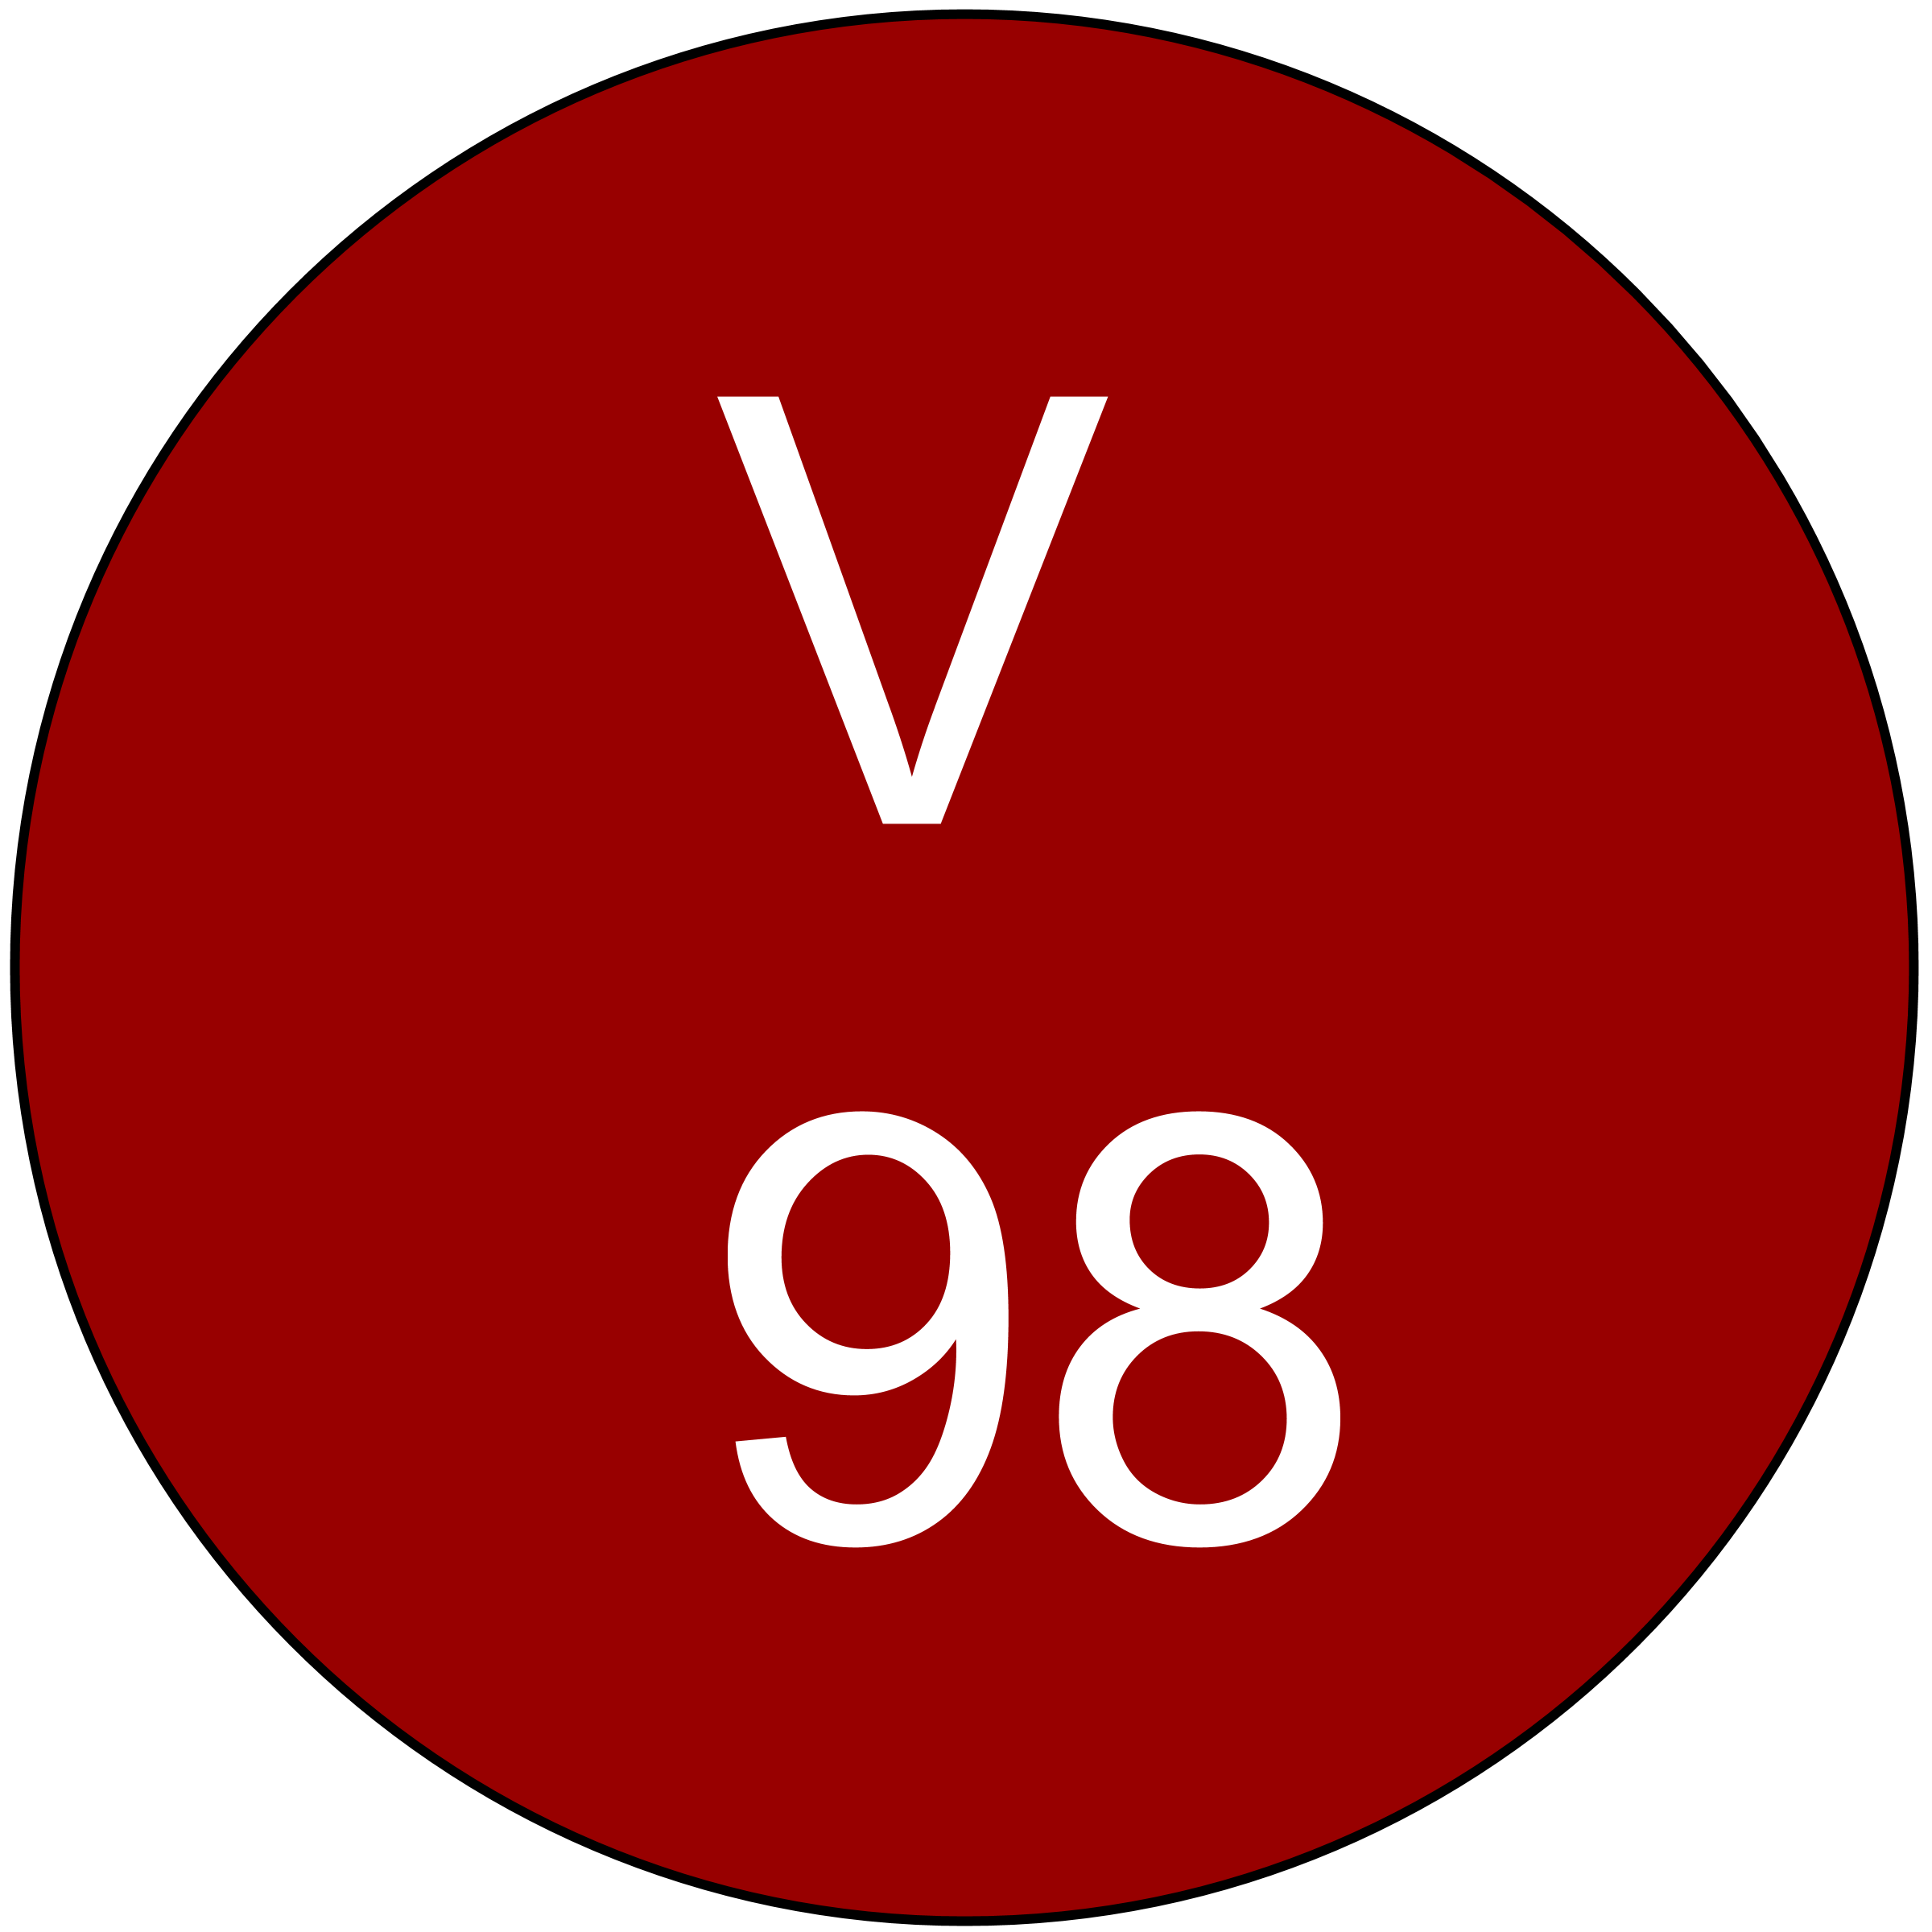 vinous-98-ratings